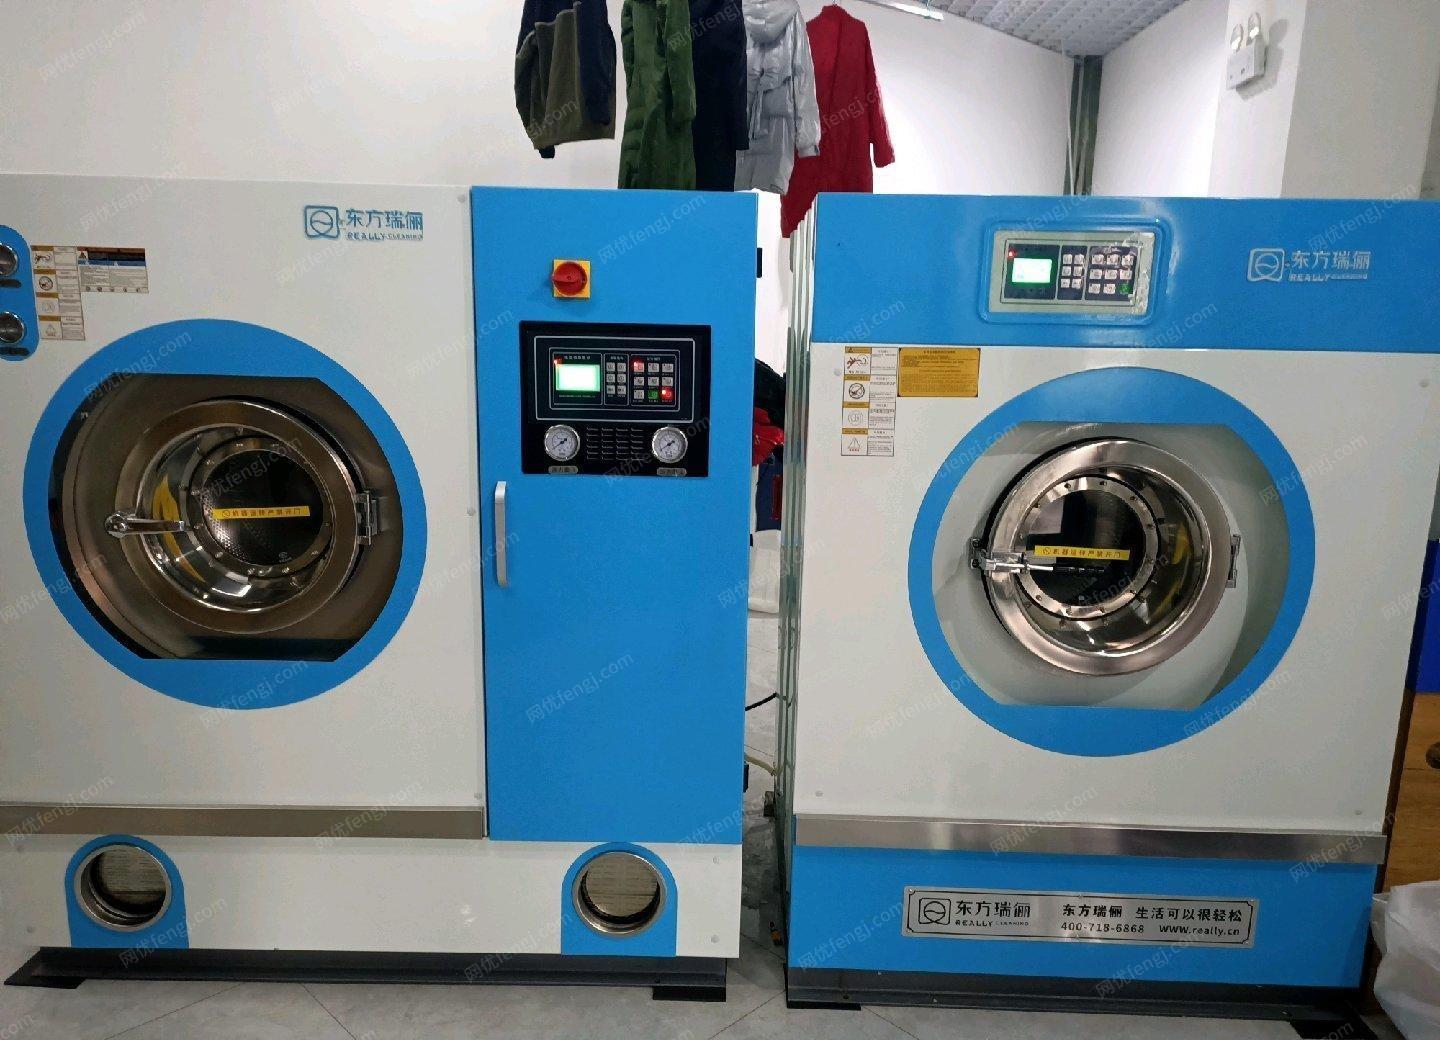 新疆伊犁因房租到期低价出售全套九成新的干洗设备